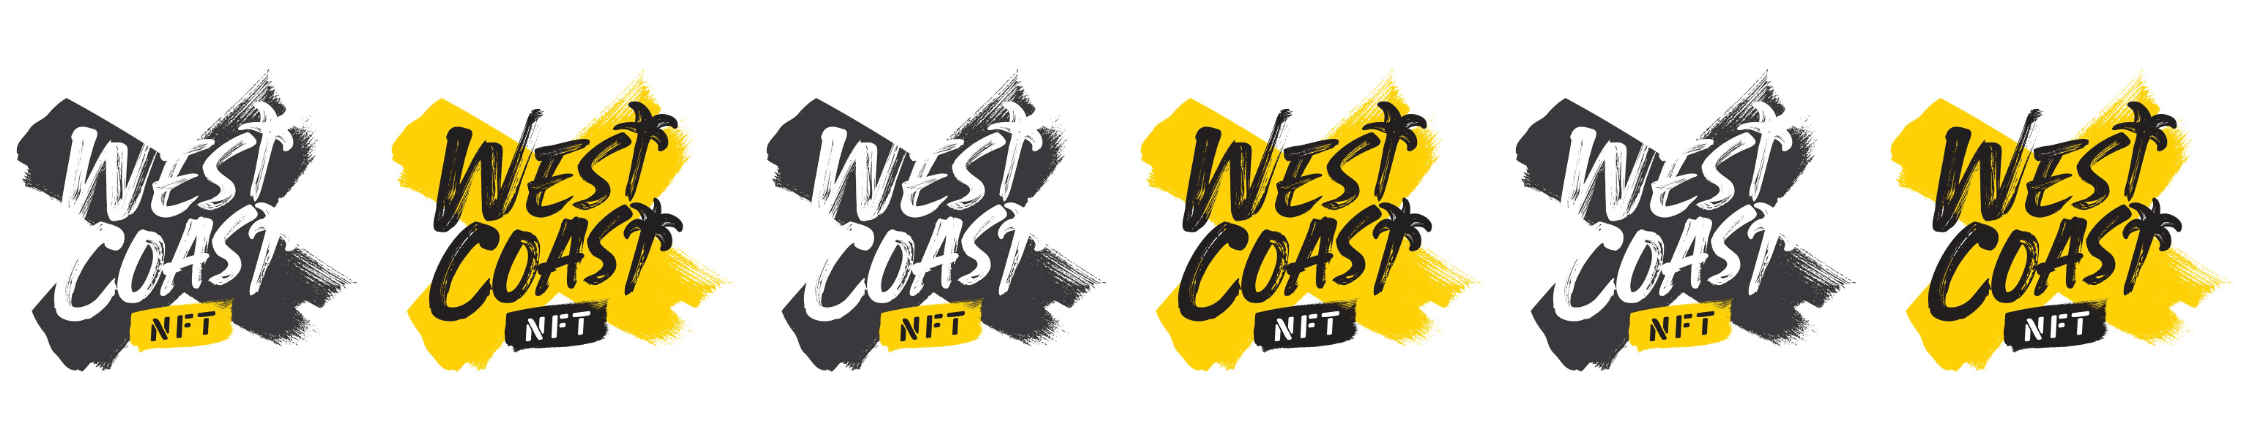 WestcoastNFT bannière